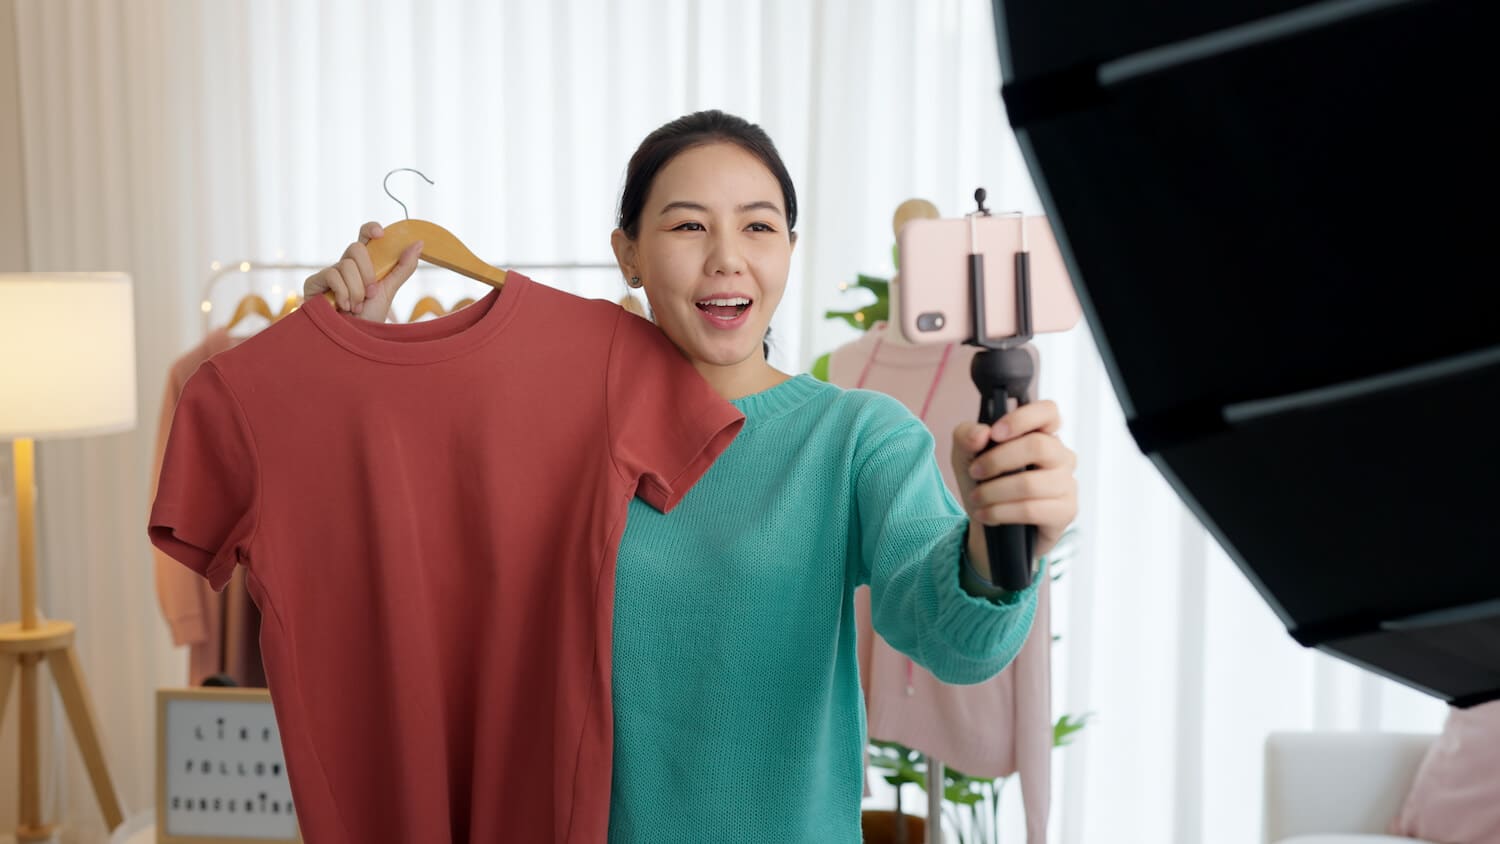 Eine Frau hält ein rotes T-Shirt in einer und eine Kamera in der anderen Hand.